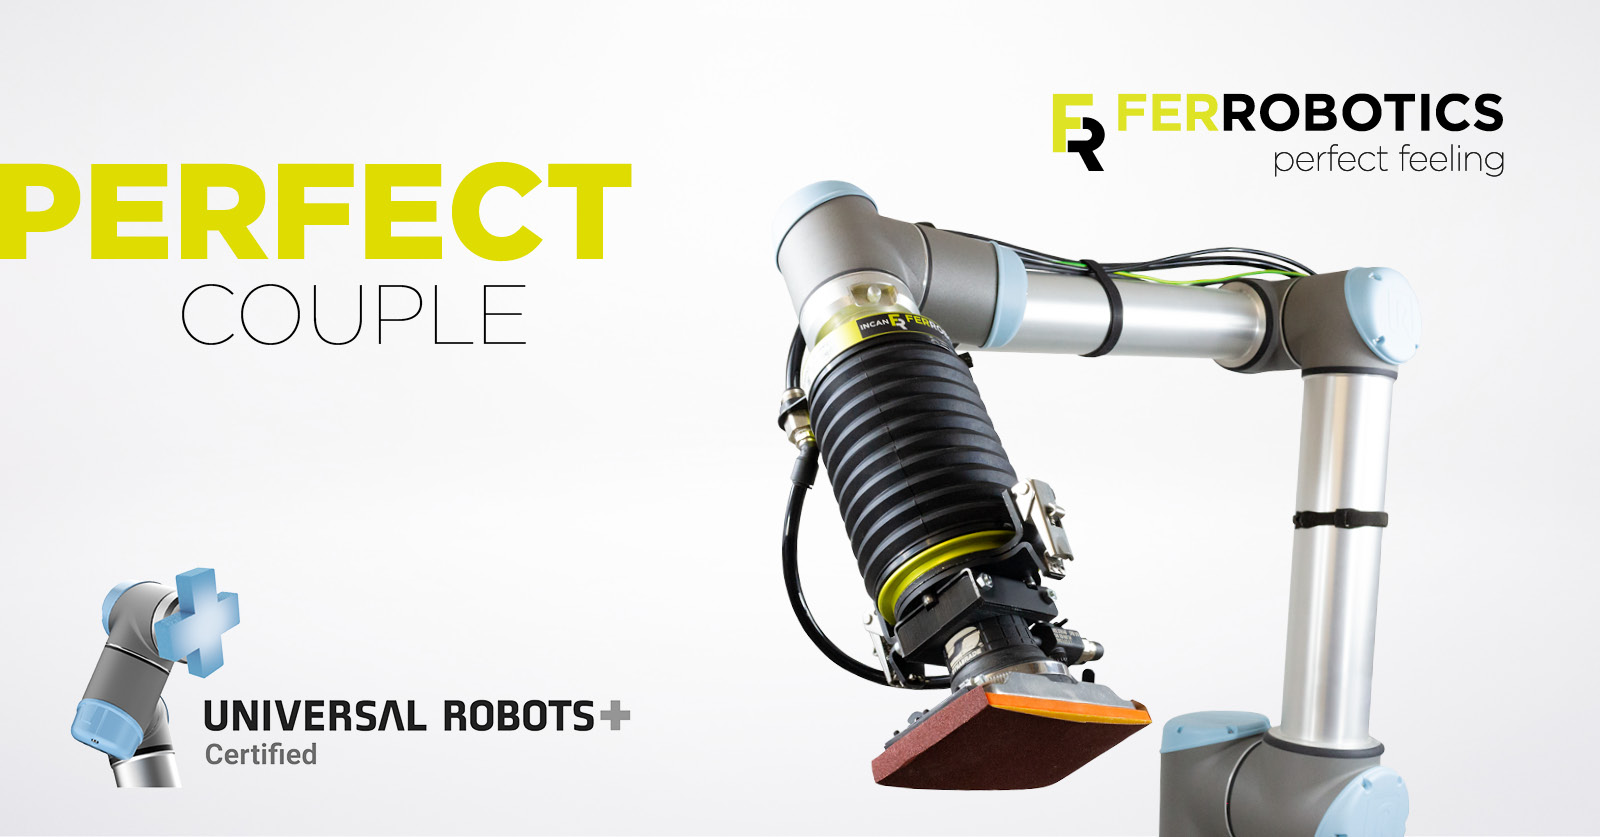 FerRobotics is Universal Robots CERTIFIED